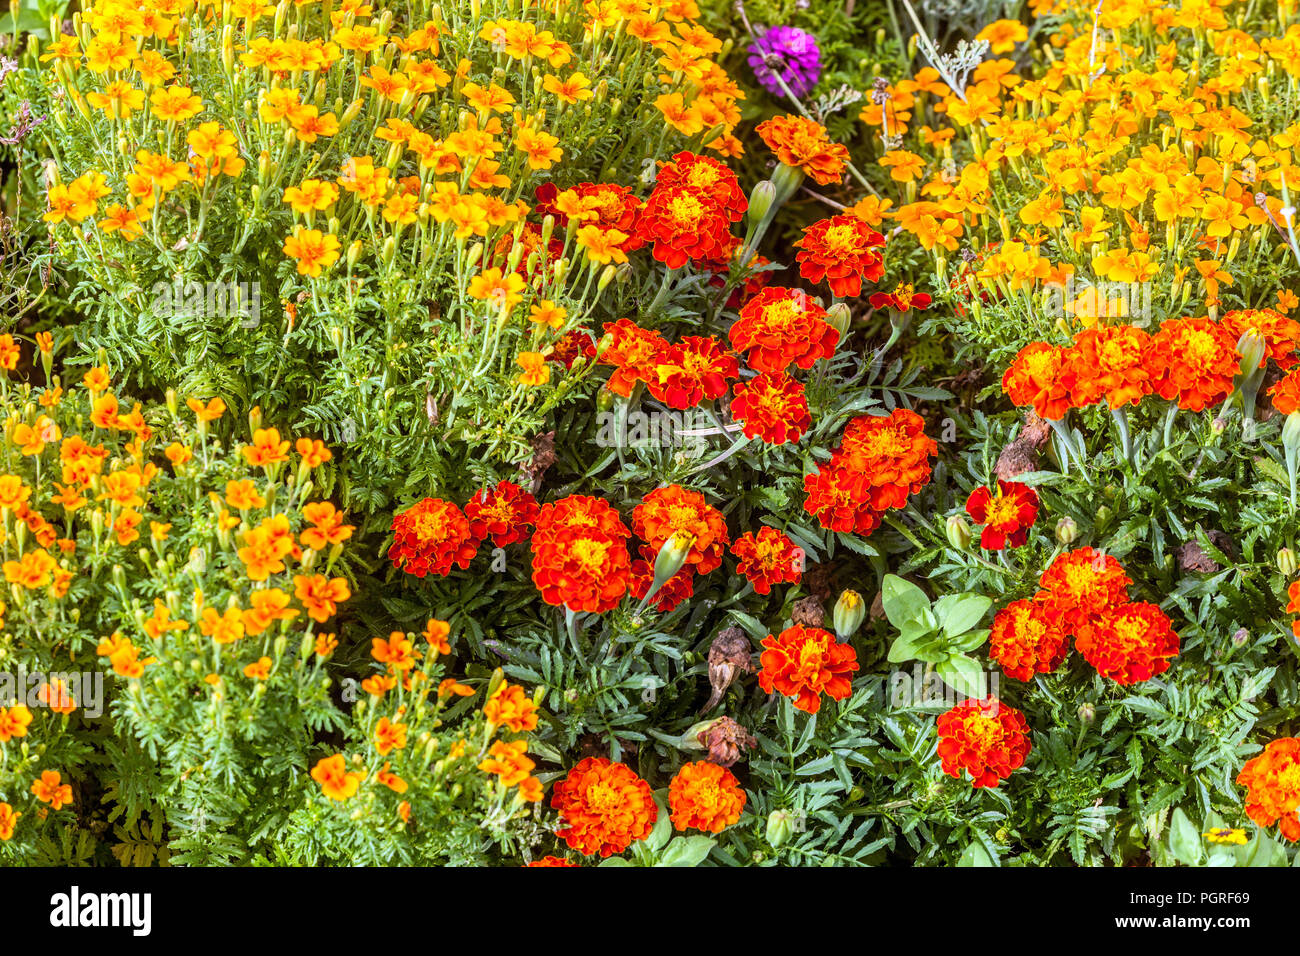 Gemischte Ringelblumen, Tagetes tenuifolia und patula, Sommer jährliche flower garden Bed, Ringelblume, Ringelblumen, Blumenbeet Grenze Stockfoto